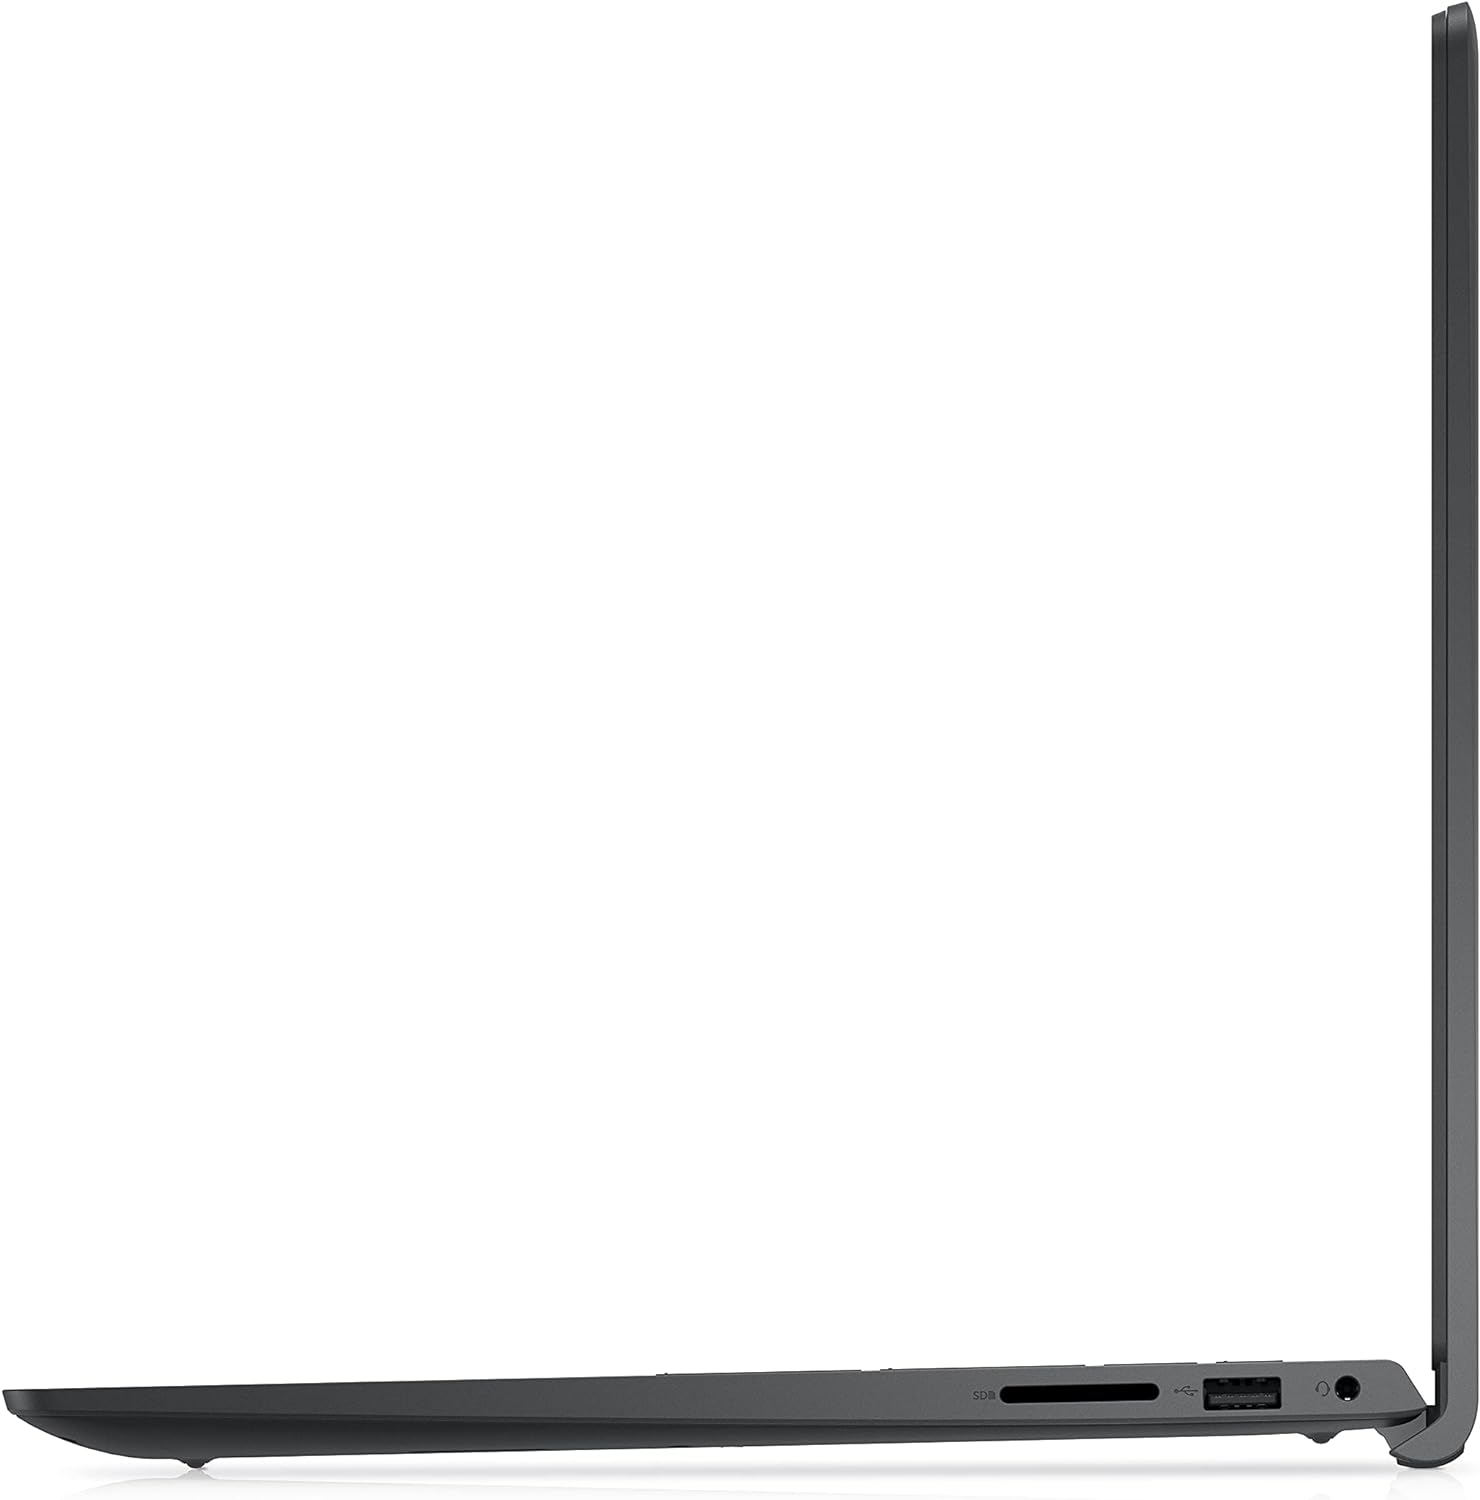 Dell Inspiron 3511 Laptop, 15.6 FHD Touchscreen Anti-Glare Display, Intel Core i5-1135G7 Quad-Core Processor, 16GB RAM, 1TB PCIe SSD, HDMI, Wi-Fi, Webcam, Windows 11, Black